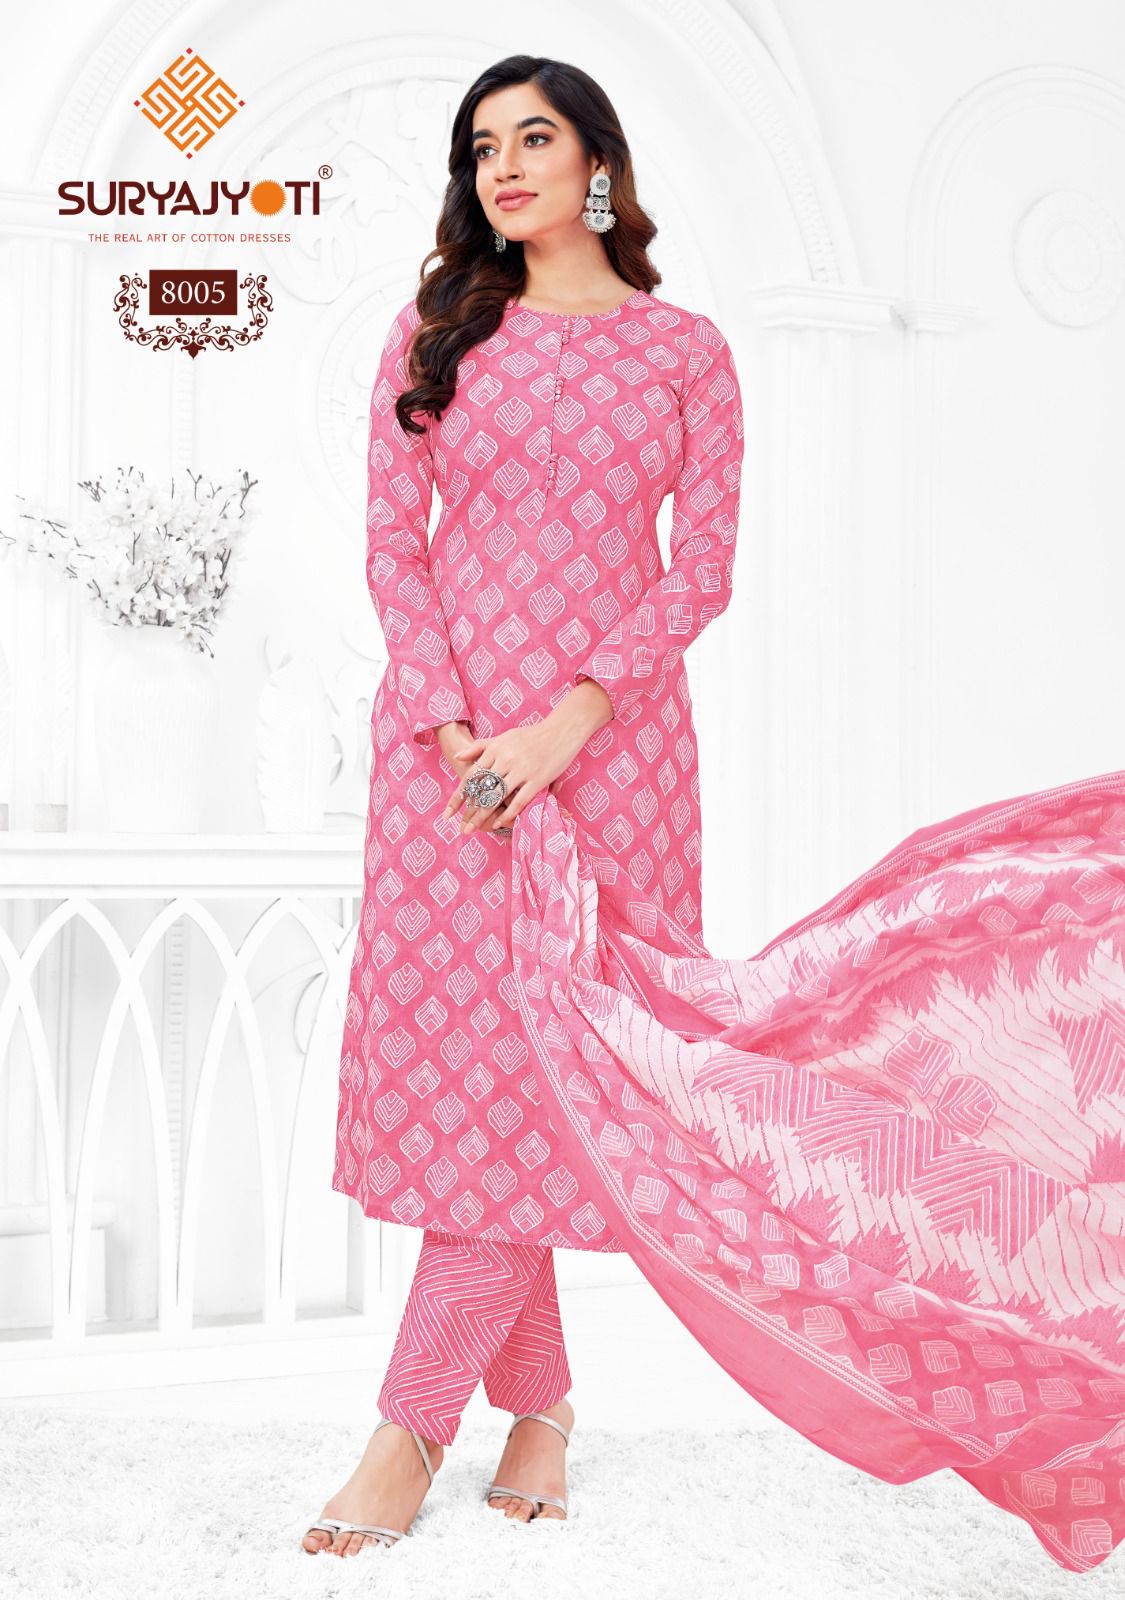 Preyasi Vol 8 Suryajyoti Cotton Dress Material Wholesale Rate